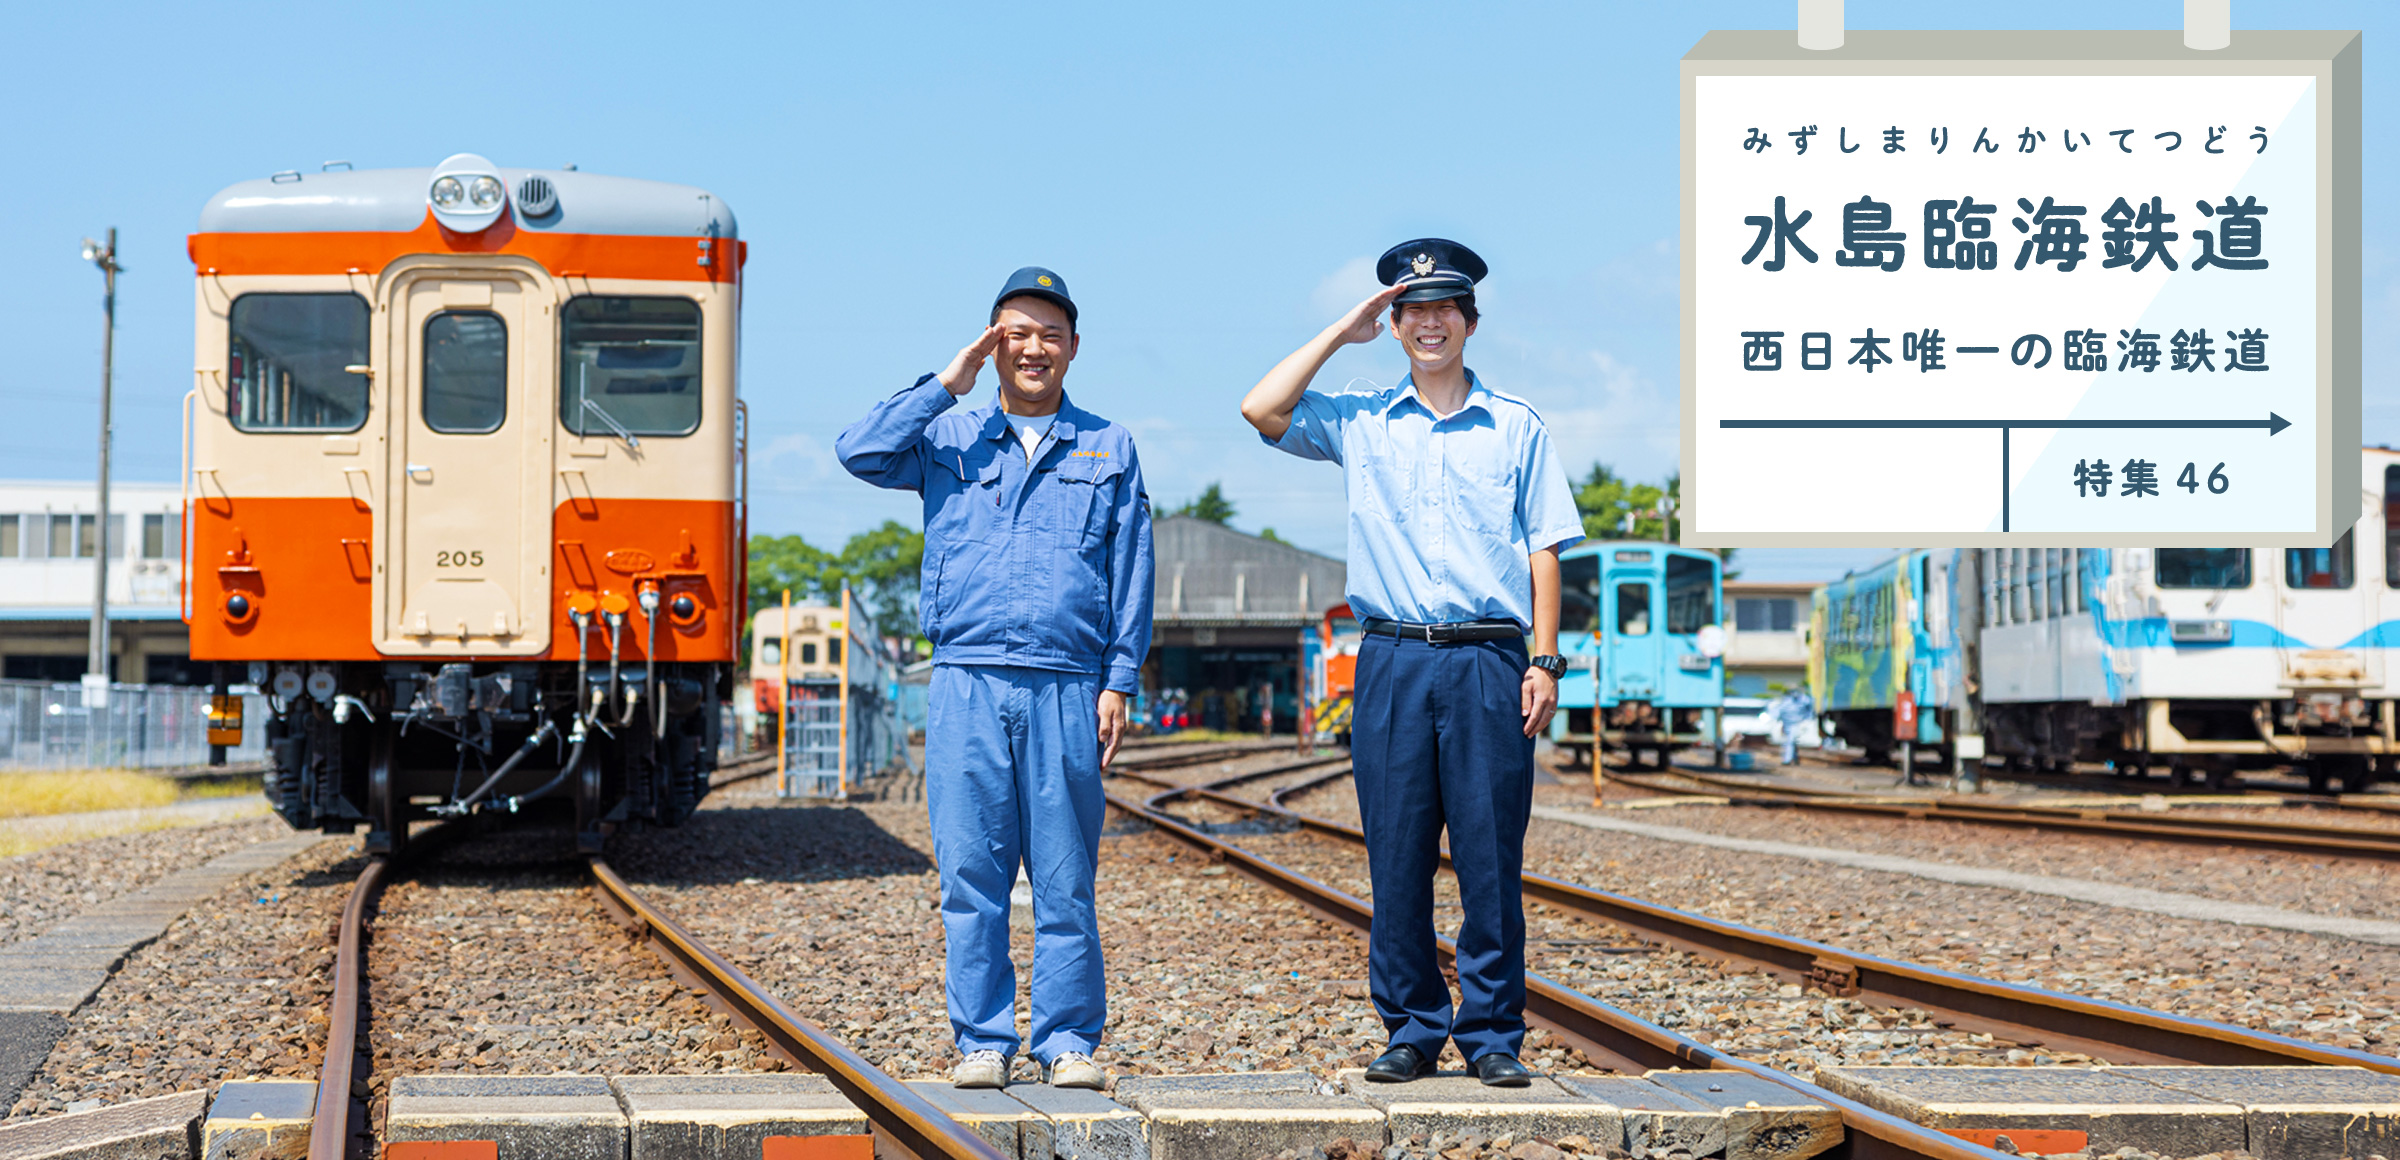 特集46 水島臨海鉄道 西日本唯一の臨海鉄道 水島工業地帯とともに発展した水島臨海鉄道とは